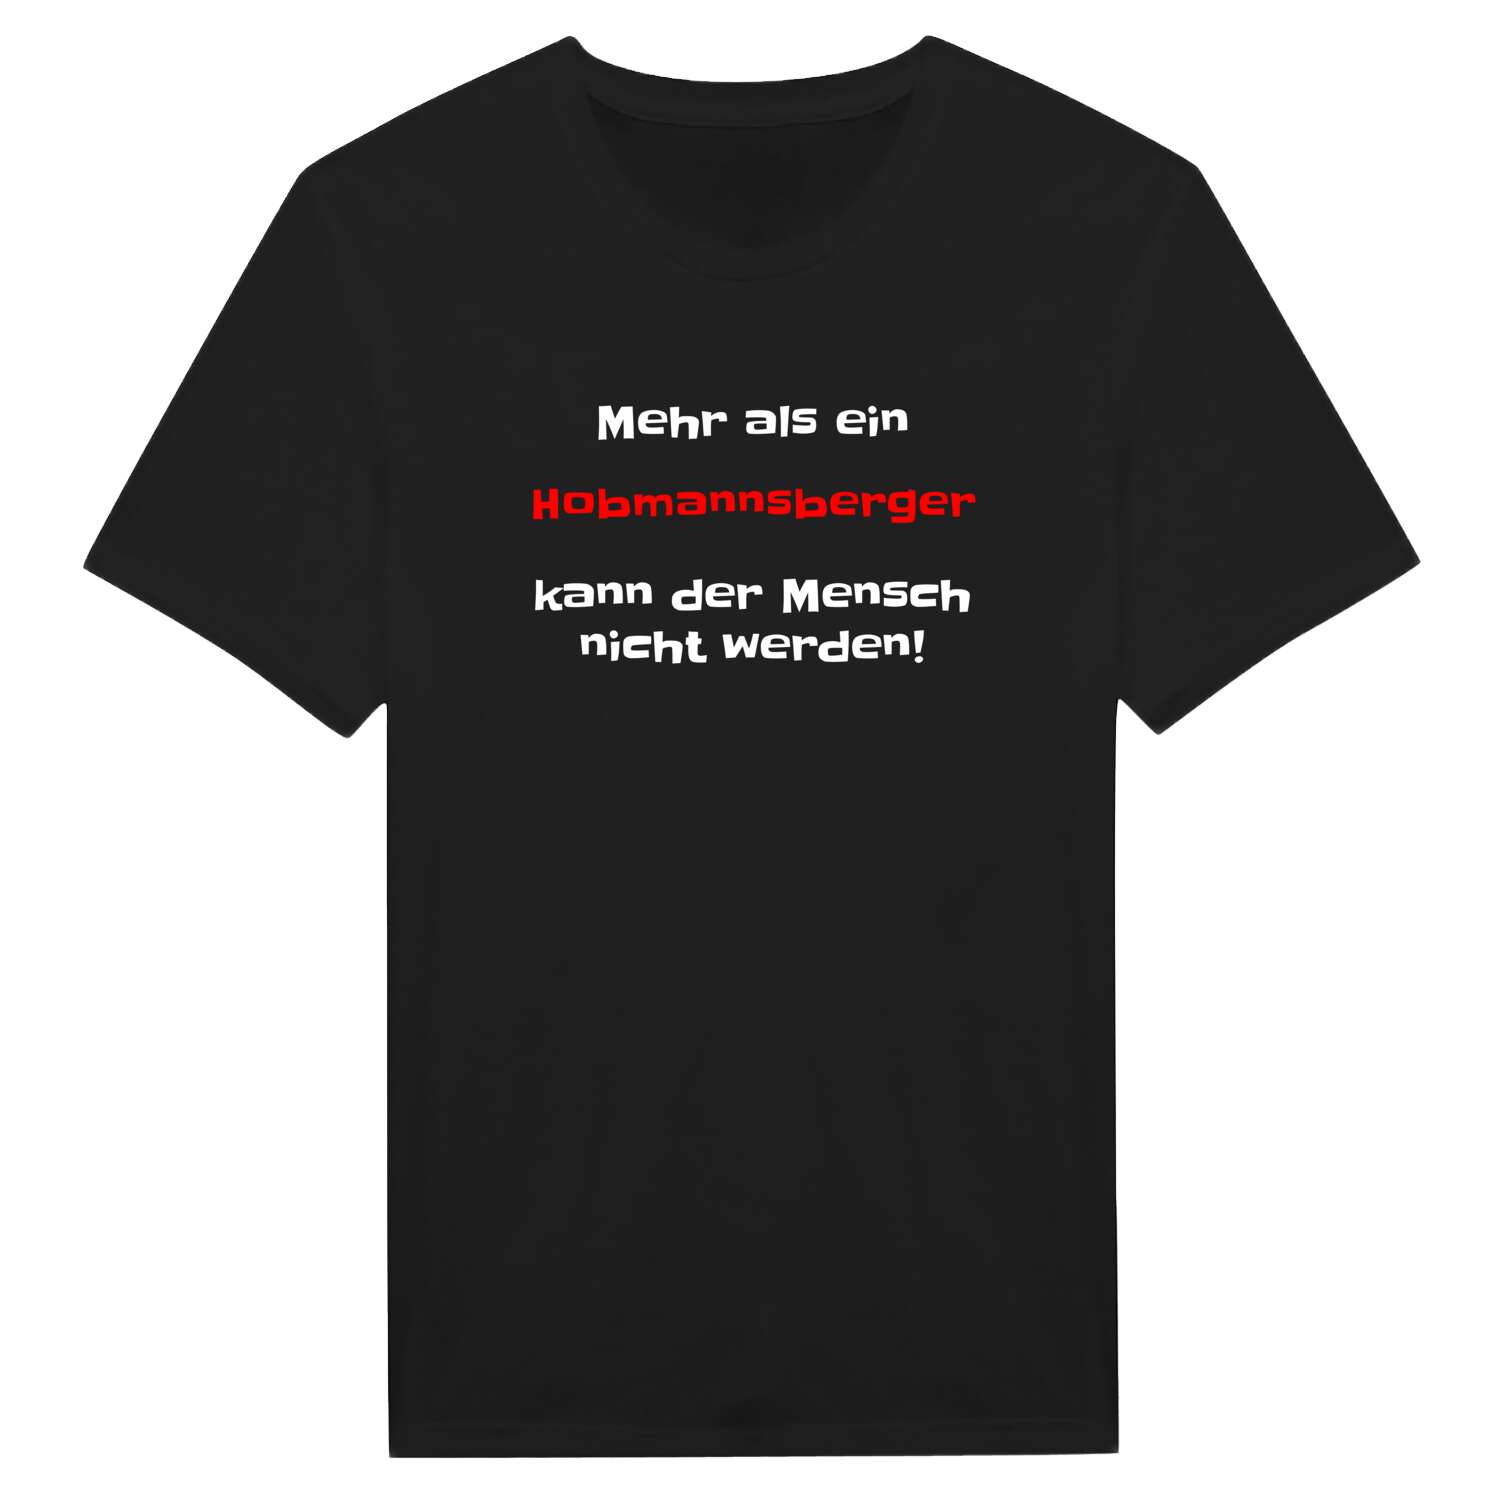 Hobmannsberg T-Shirt »Mehr als ein«